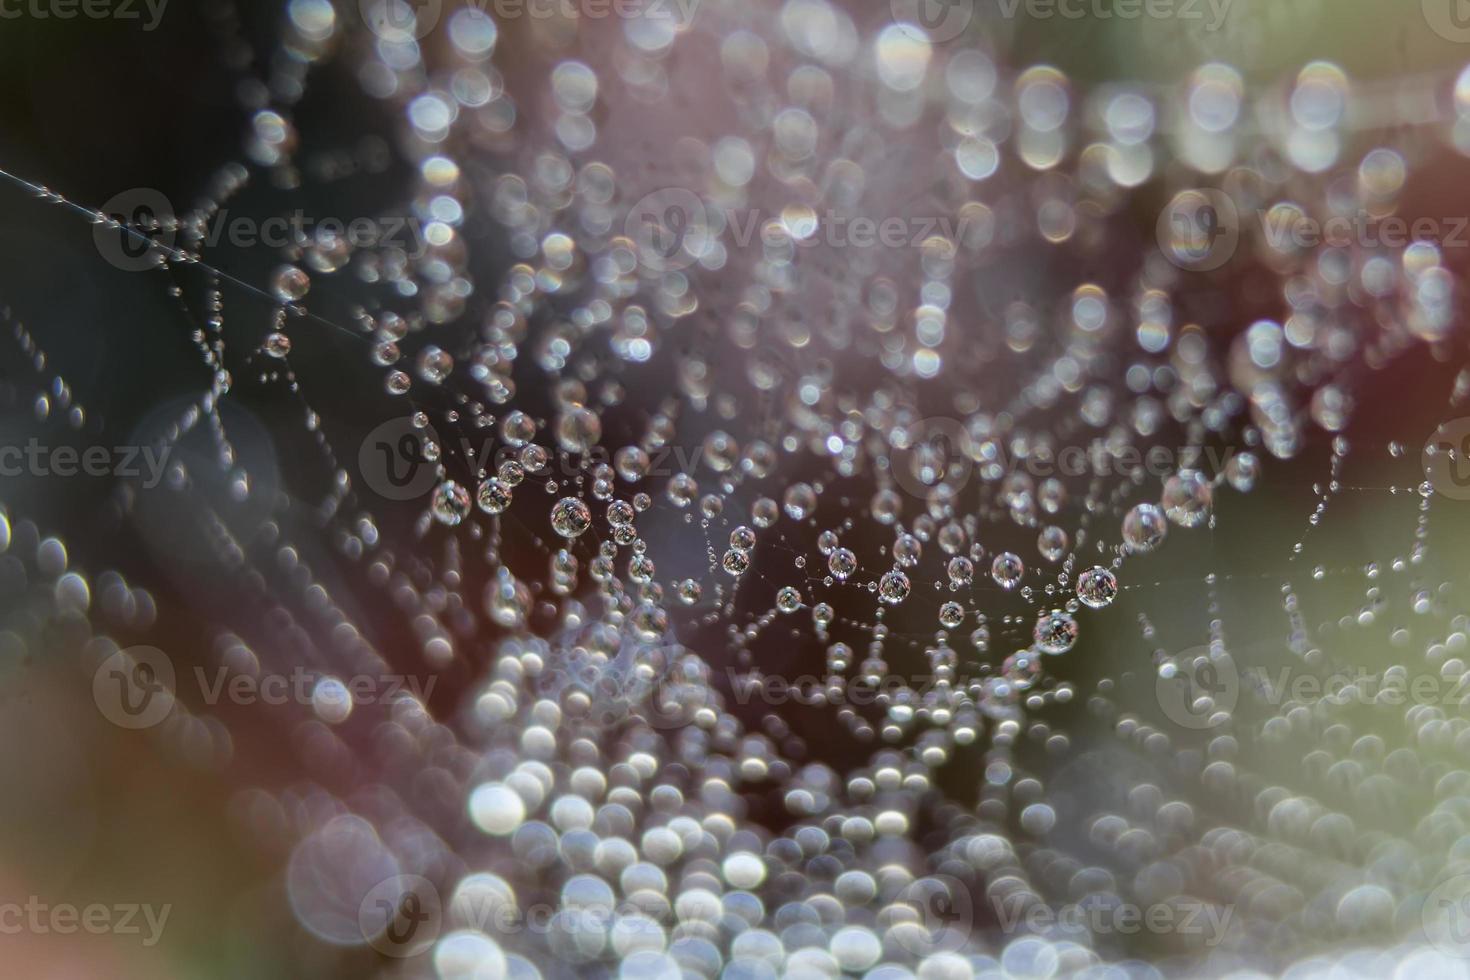 Dew drops close up photo